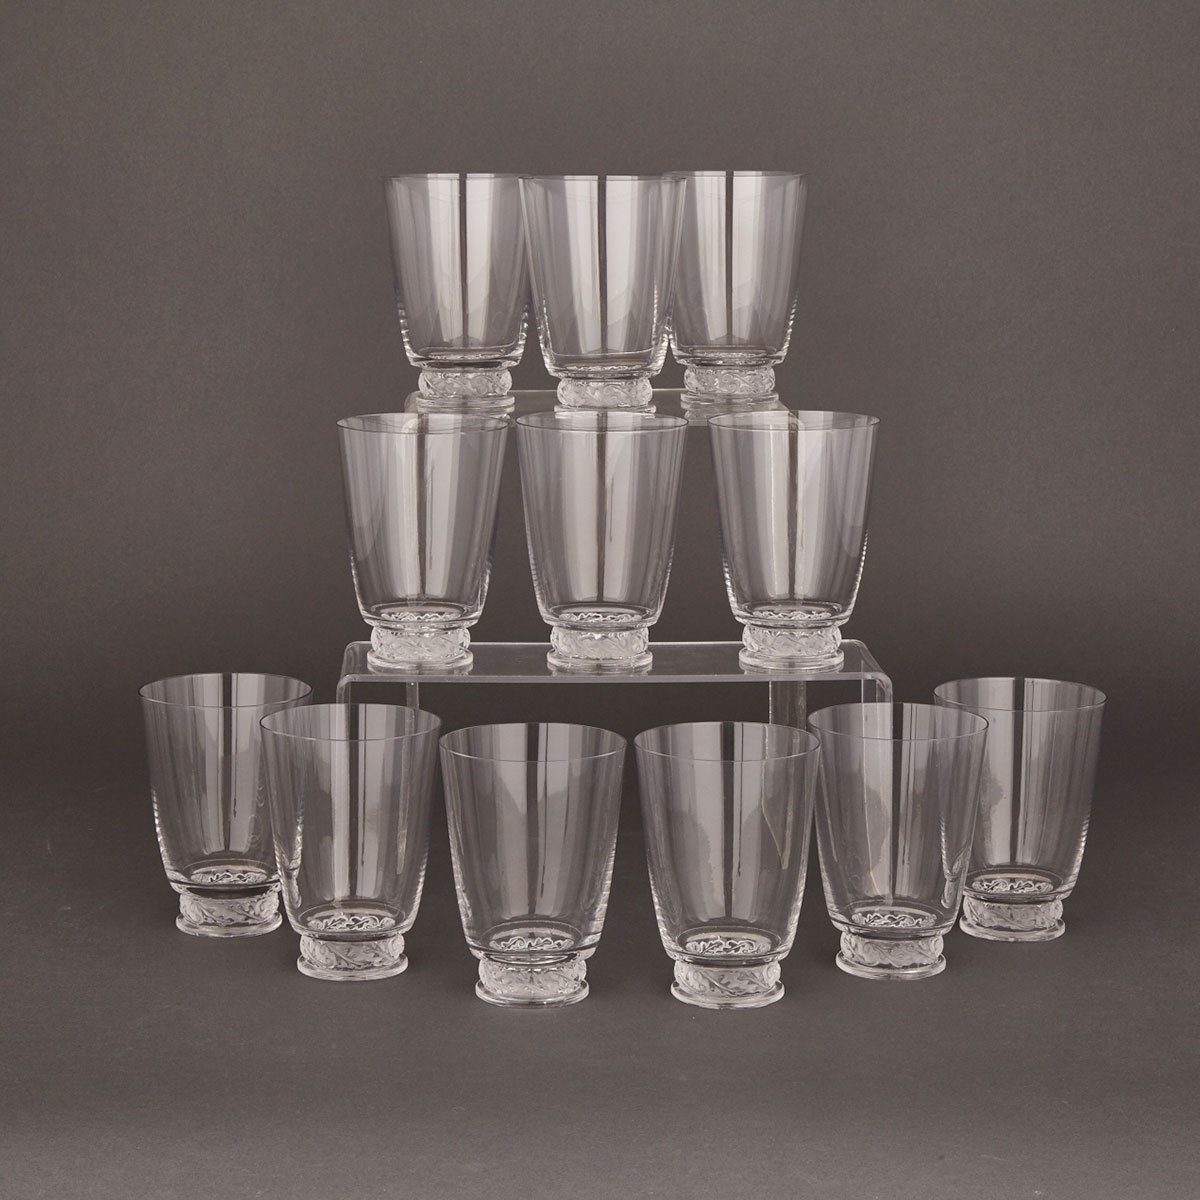 Set of Twelve Lalique Glasses, 20th century